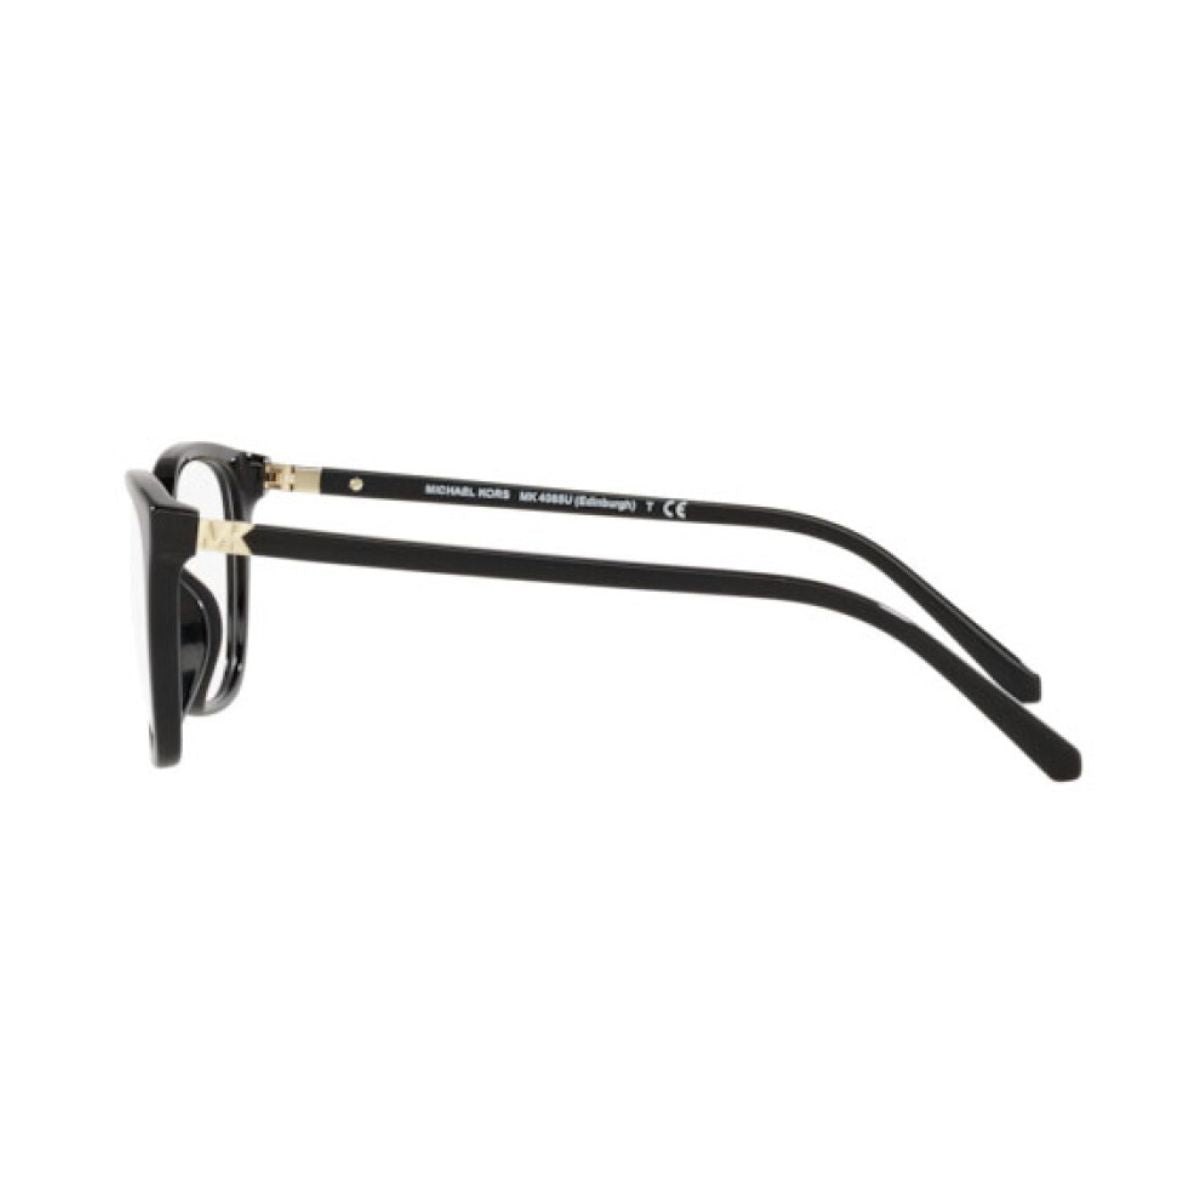 "best Michael Kors 4085U 3005 eyesight glasses frame for women's at optorium"